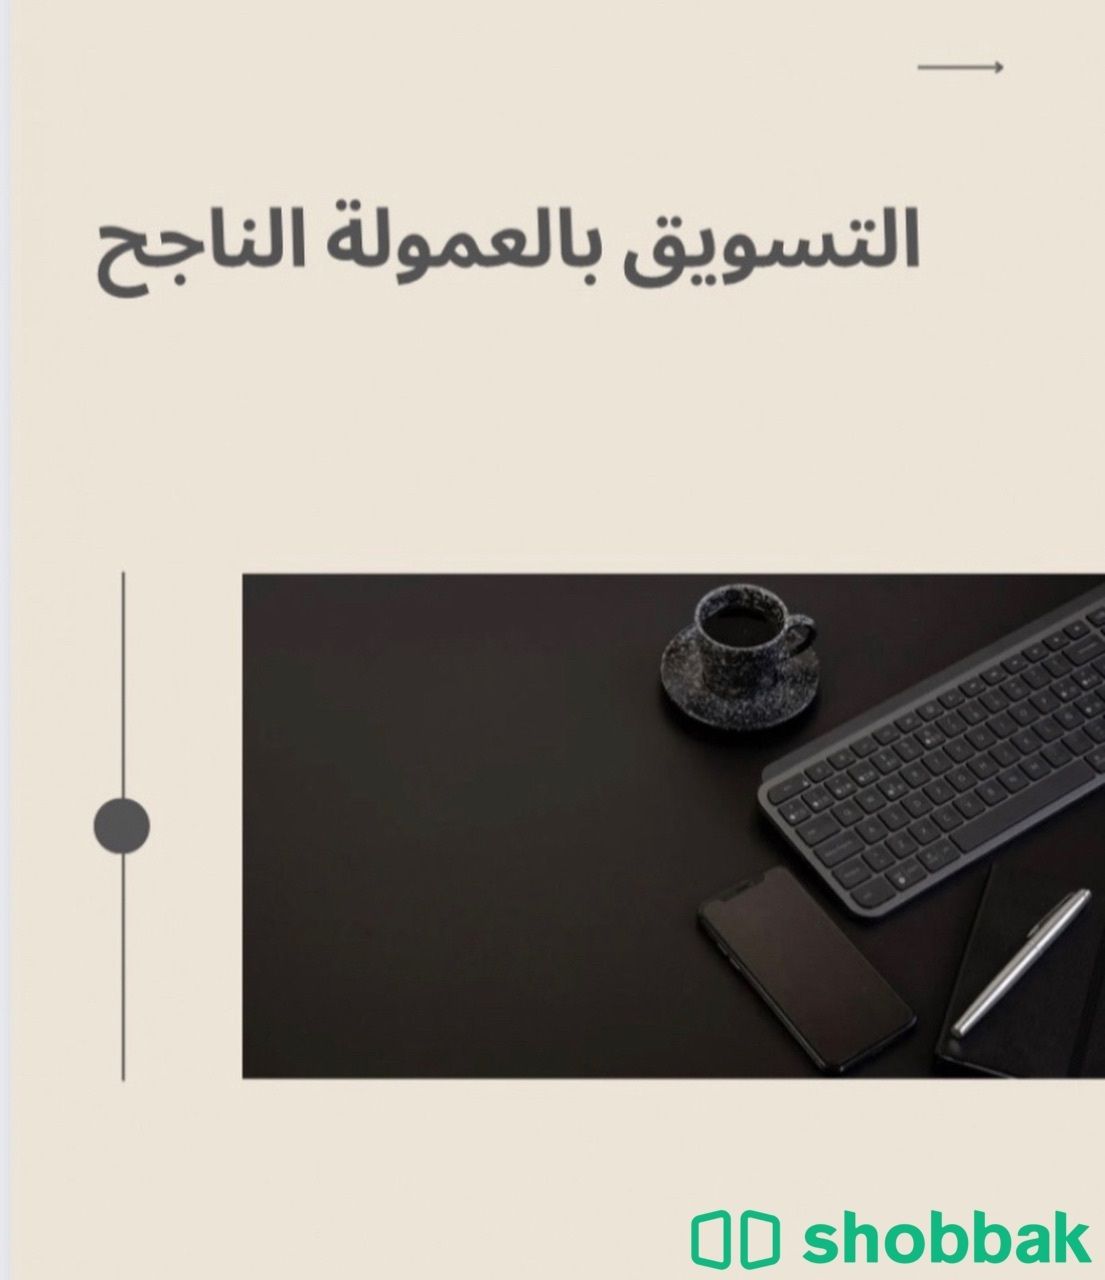 ملف التسويق الناجح بالعمولة بالخطوات  Shobbak Saudi Arabia